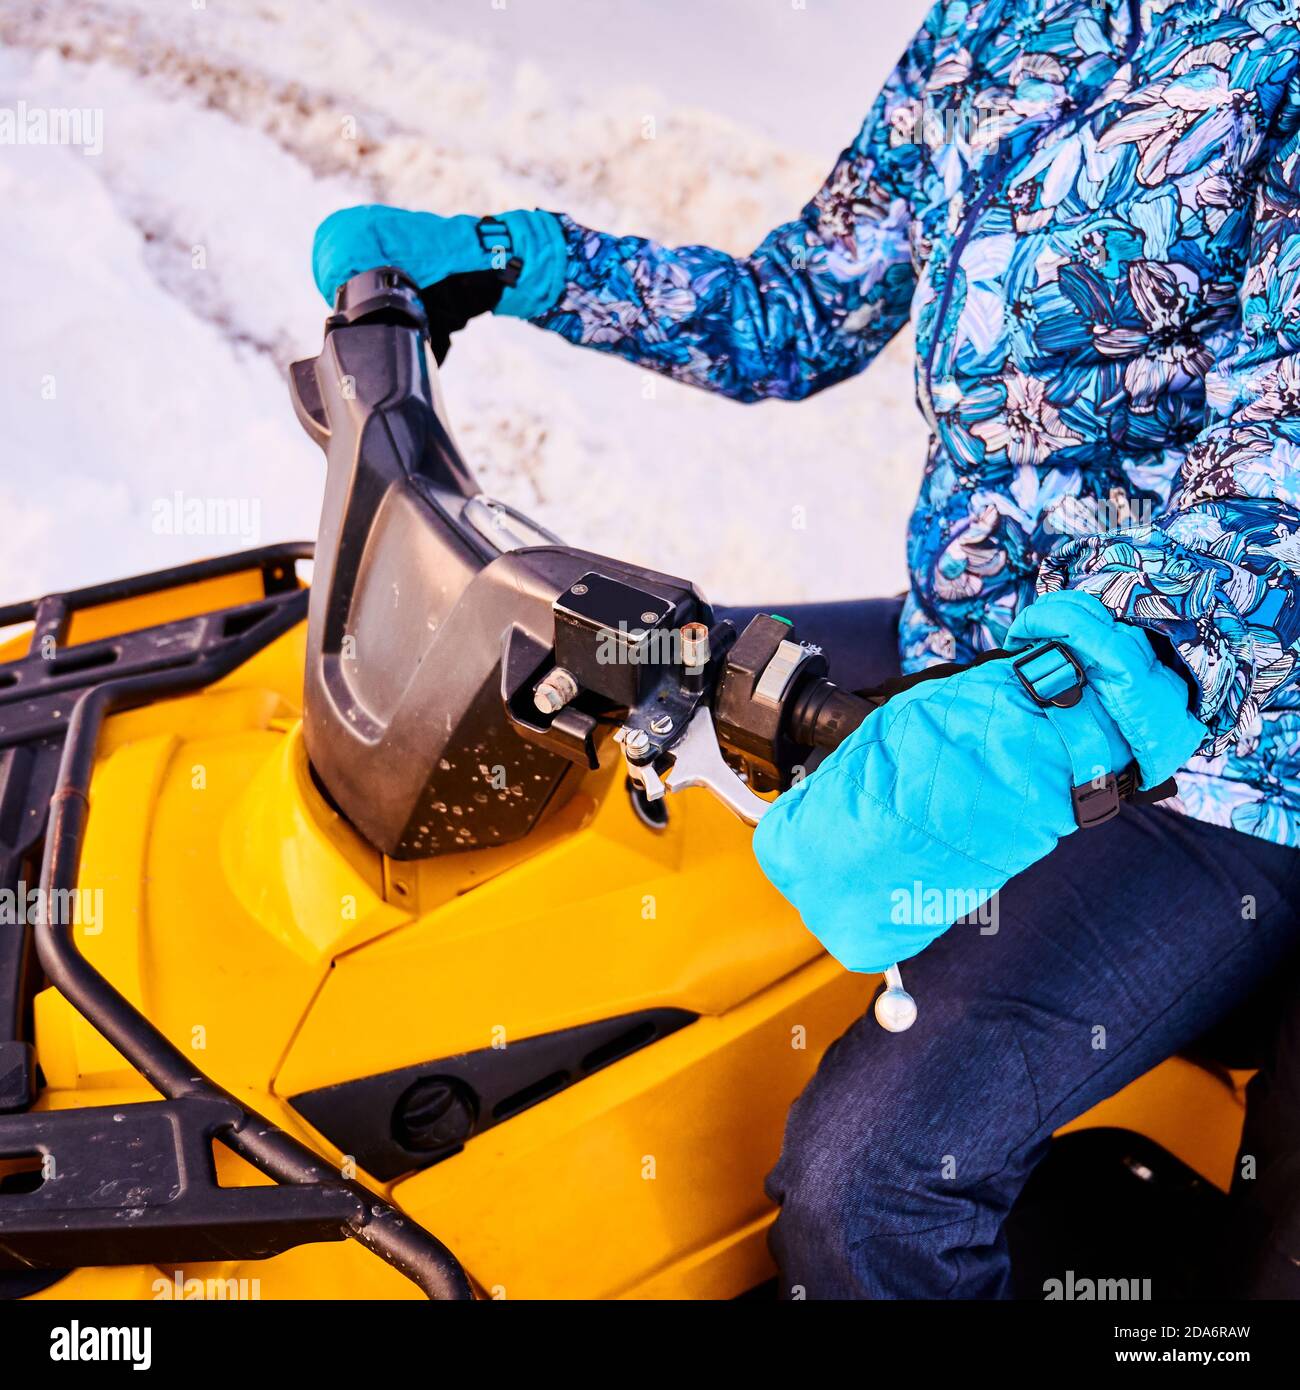 Beschnittene Nahaufnahme der Person in blauem Winteranzug und Fäustlingen, sitzend auf gelbem ATV-Fahrrad, das im Winter das Ruder hält, diagonaler Schnappschuss. Konzept des Wintersports und Quad-Biking. Stockfoto